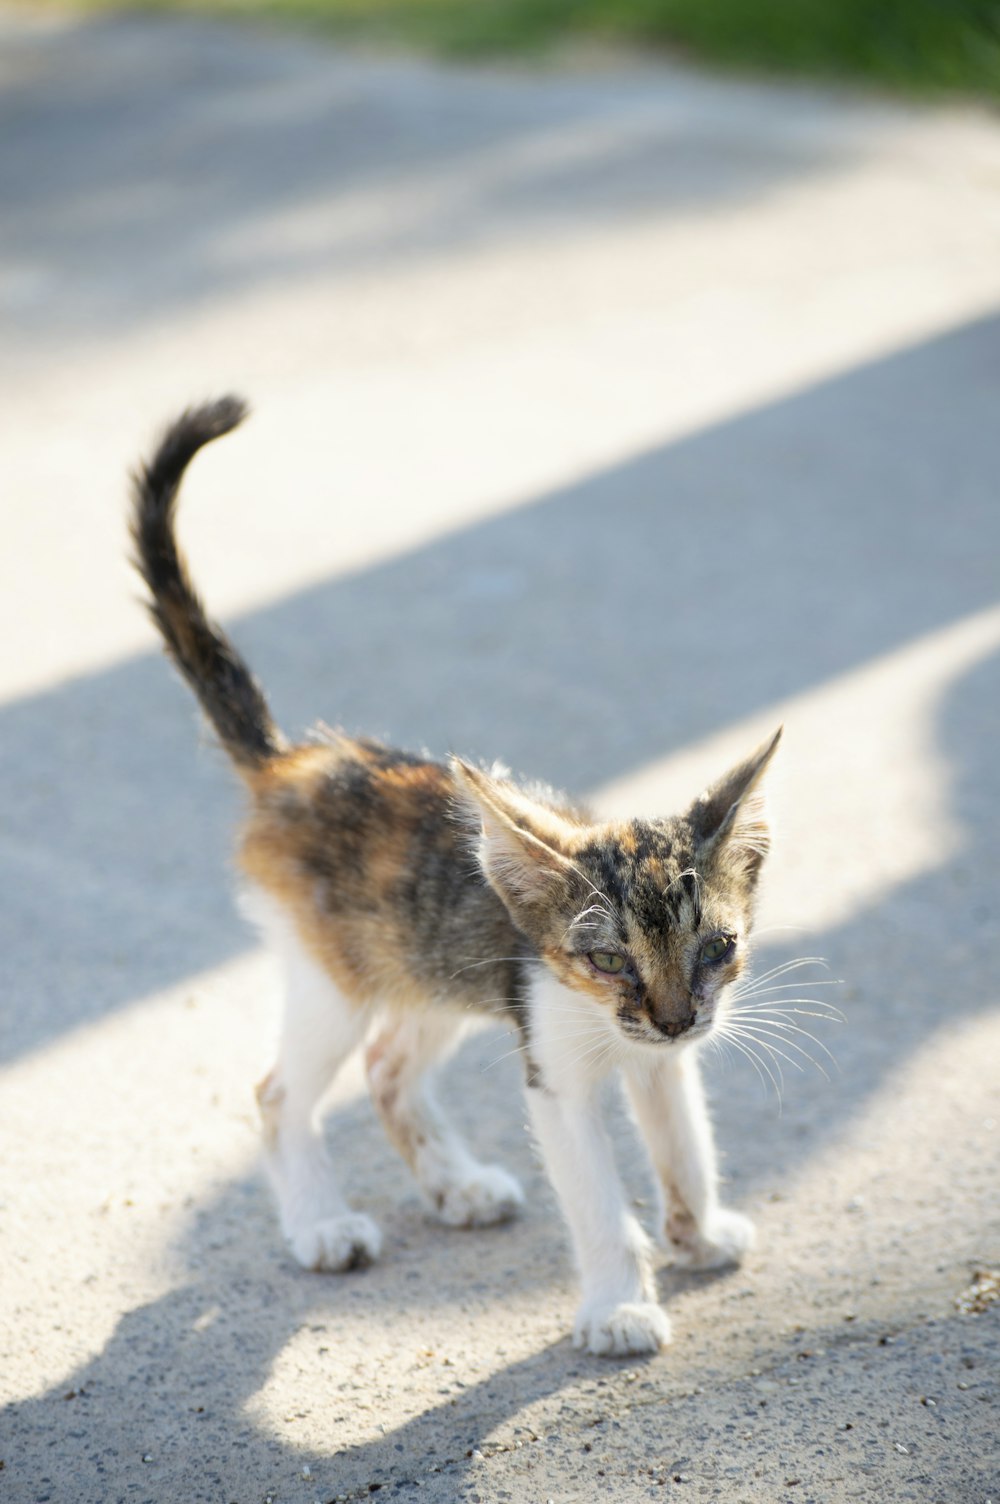 a small kitten walking across a cement road